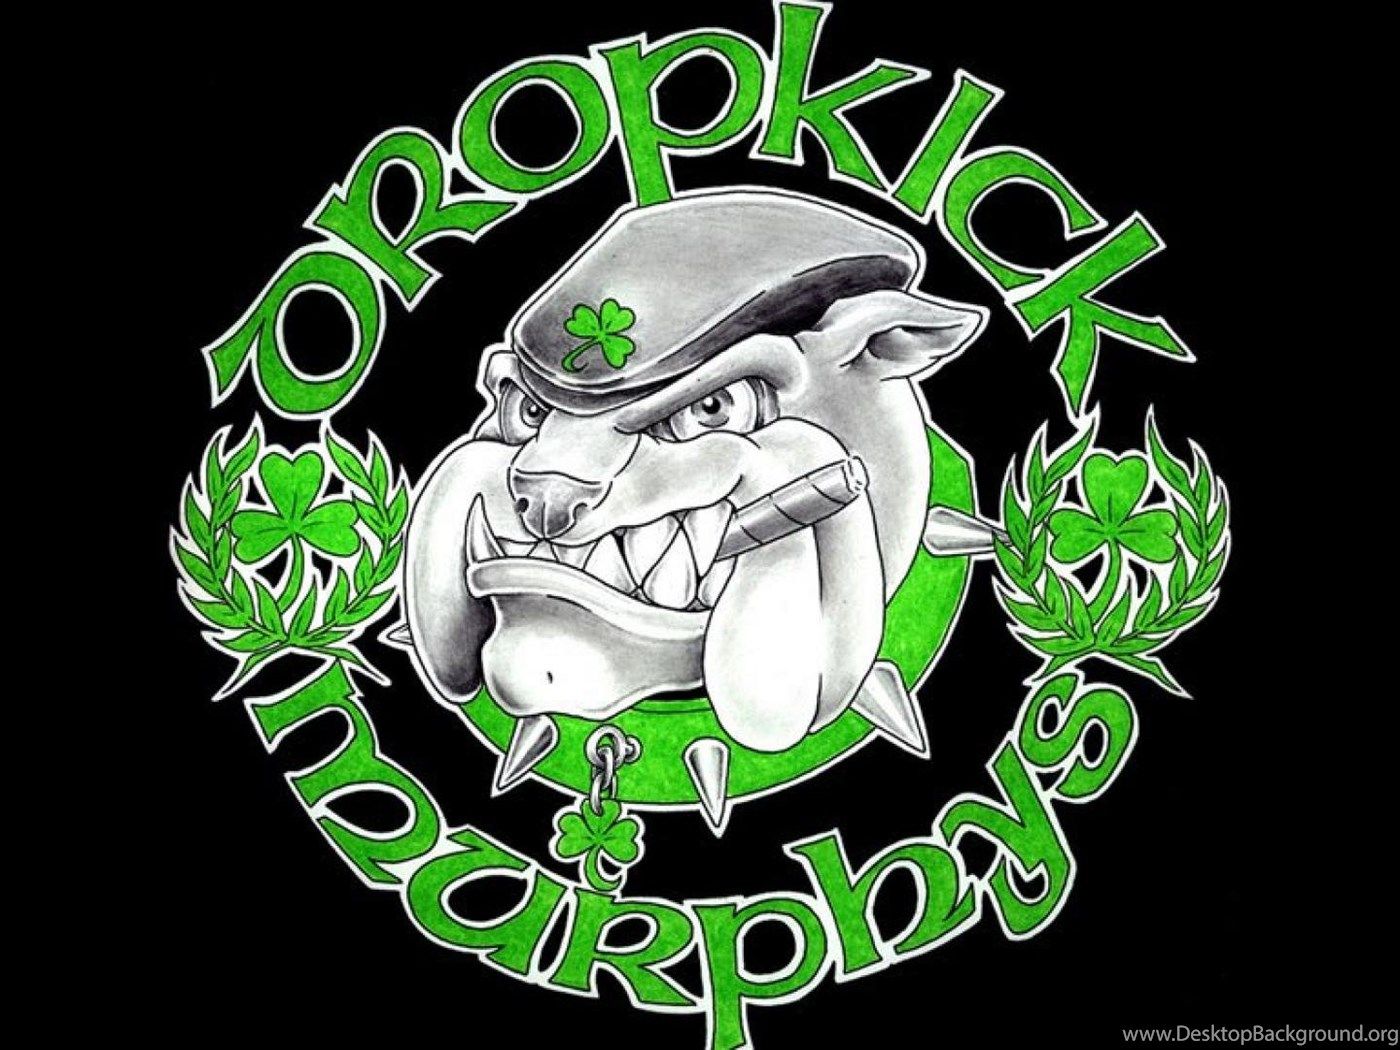 Dropkick Murphys Official HD Wallpaper Desktop Background